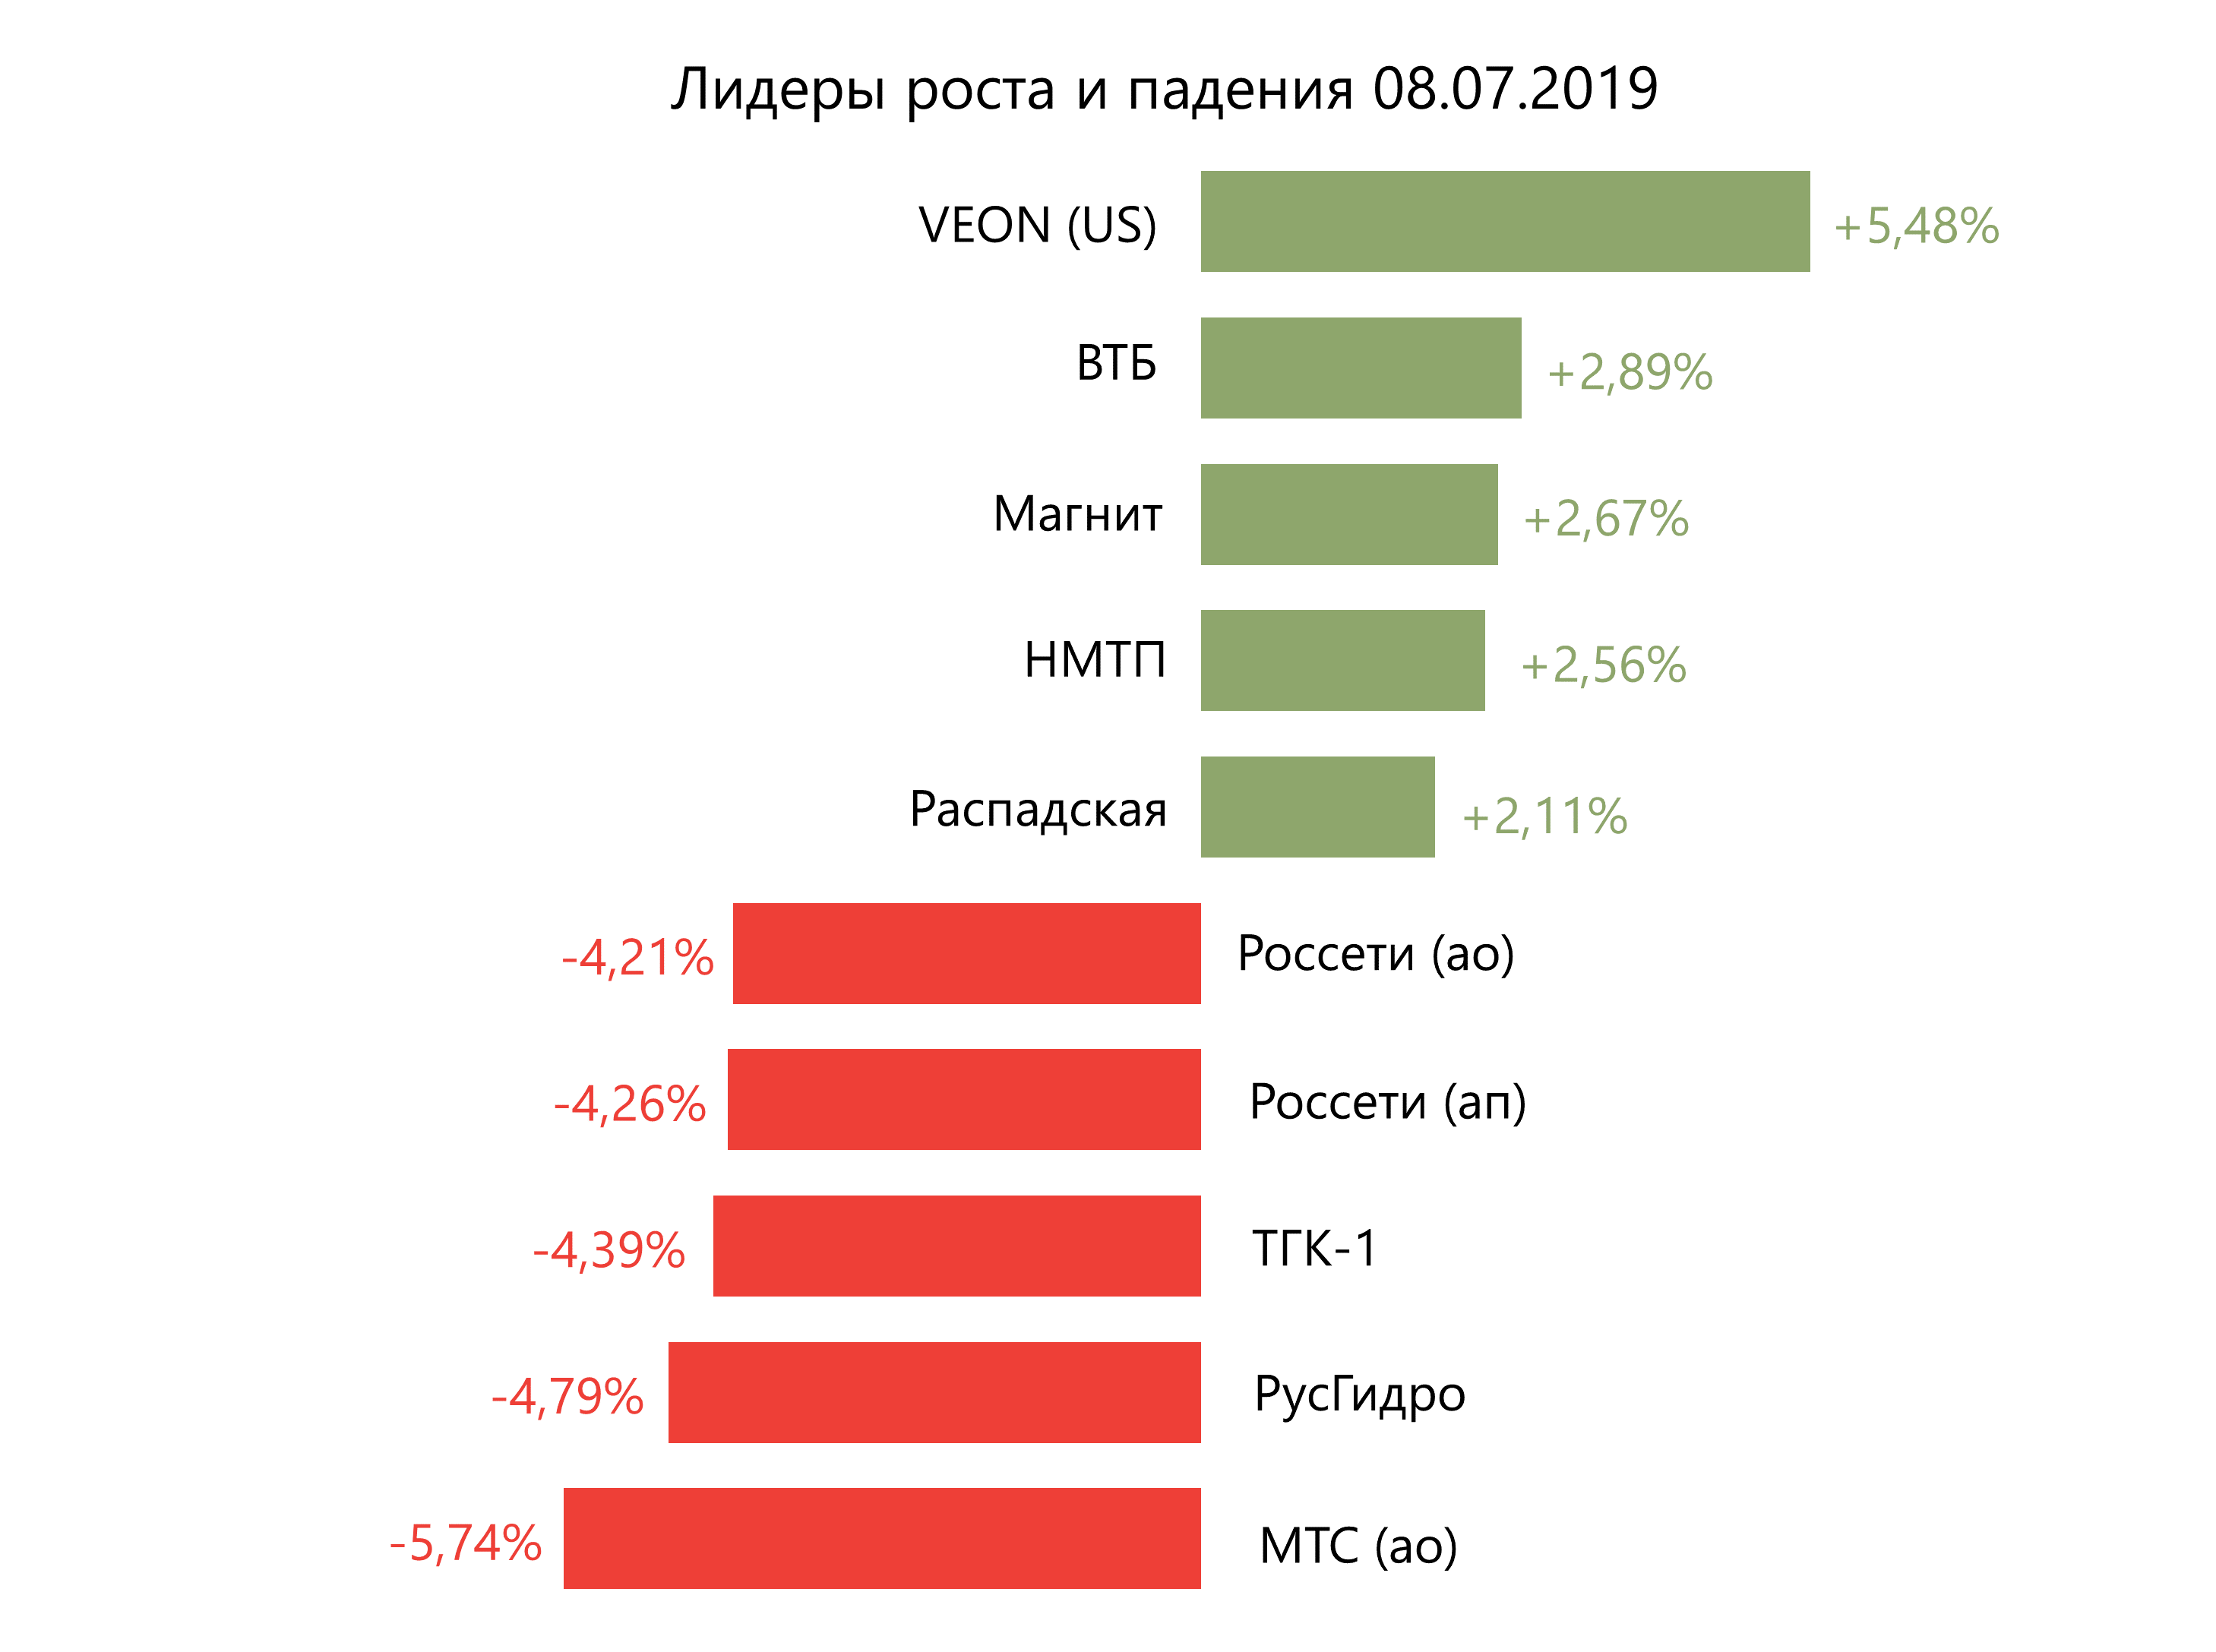 Лидеры роста и падения российского рынка на 8 июля